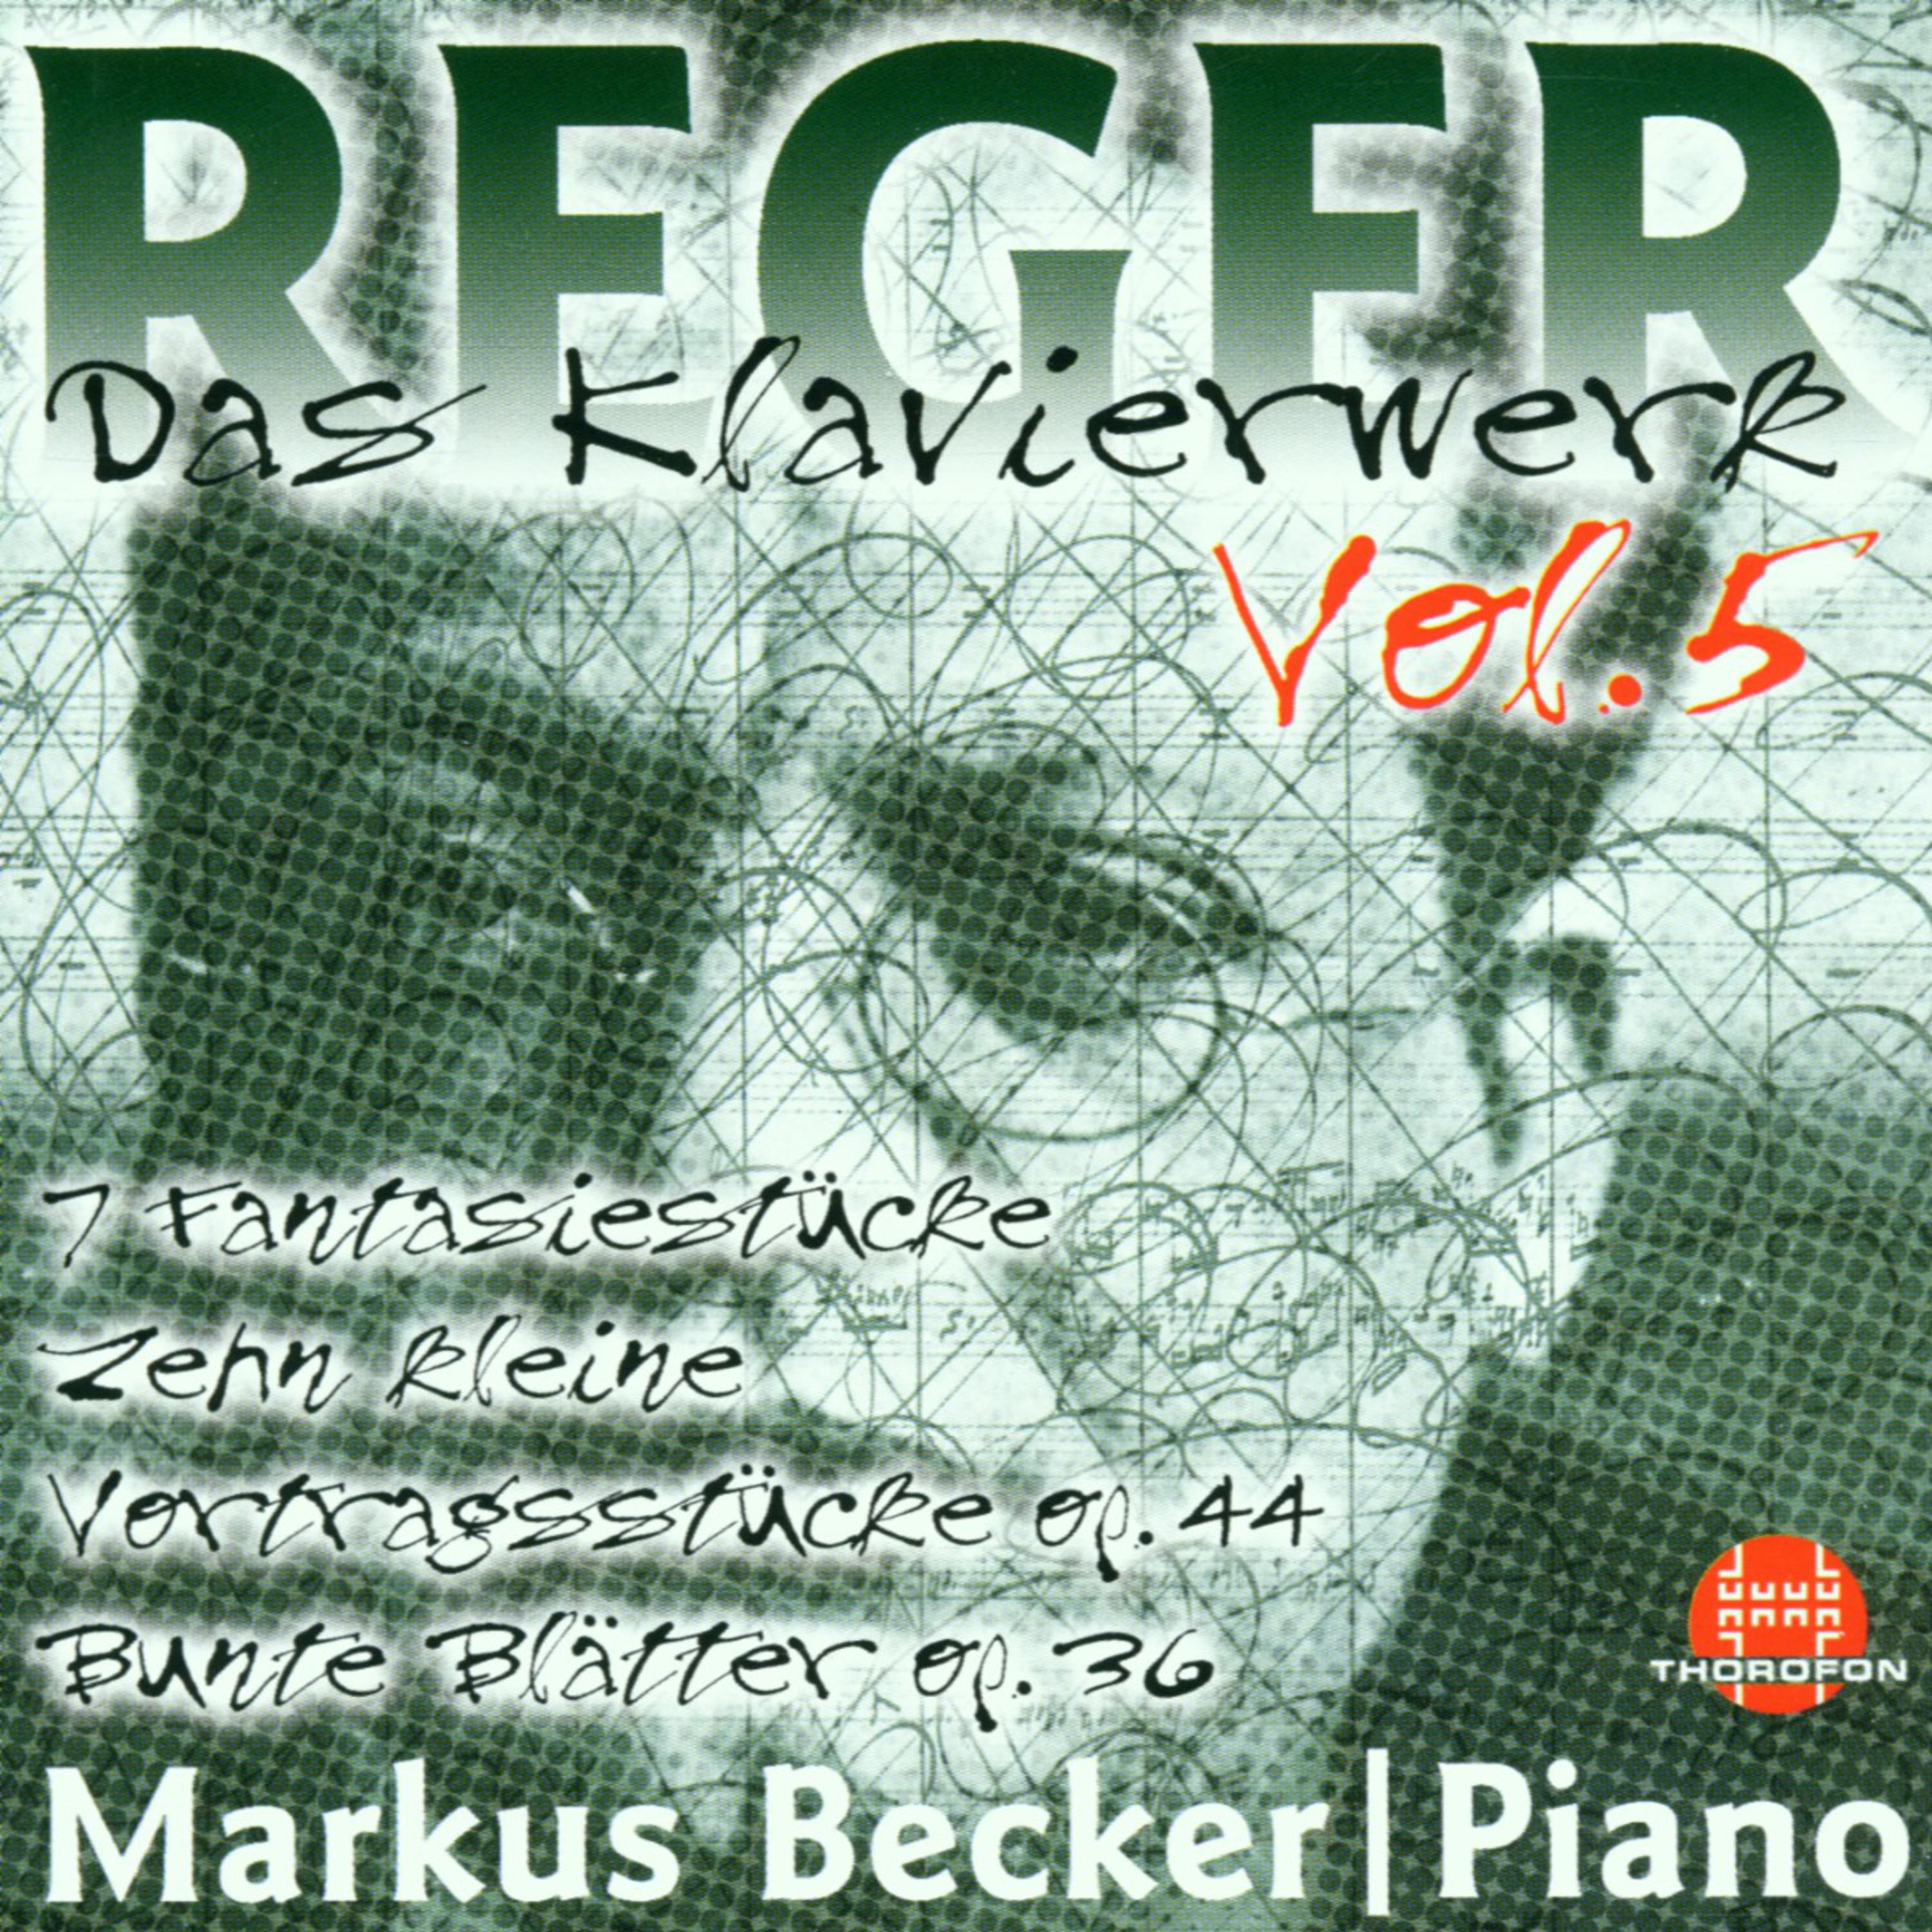 Max Reger: Das Klavierwerk - Vol. 5